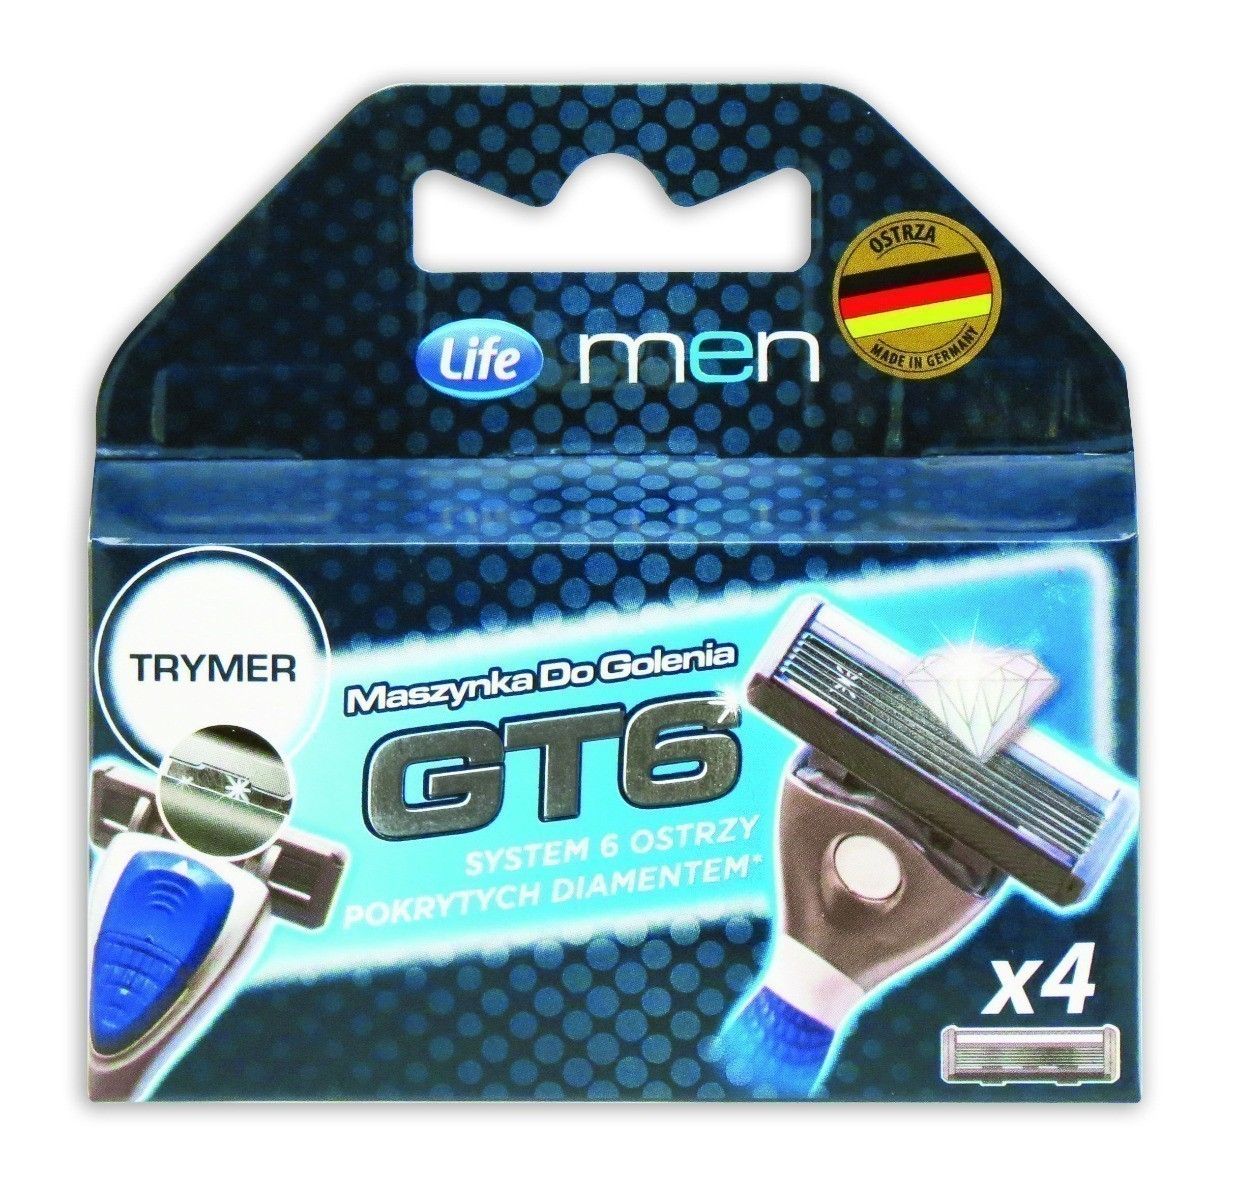 Life Men GT6 Refills картриджи для бритвы, 4 шт.